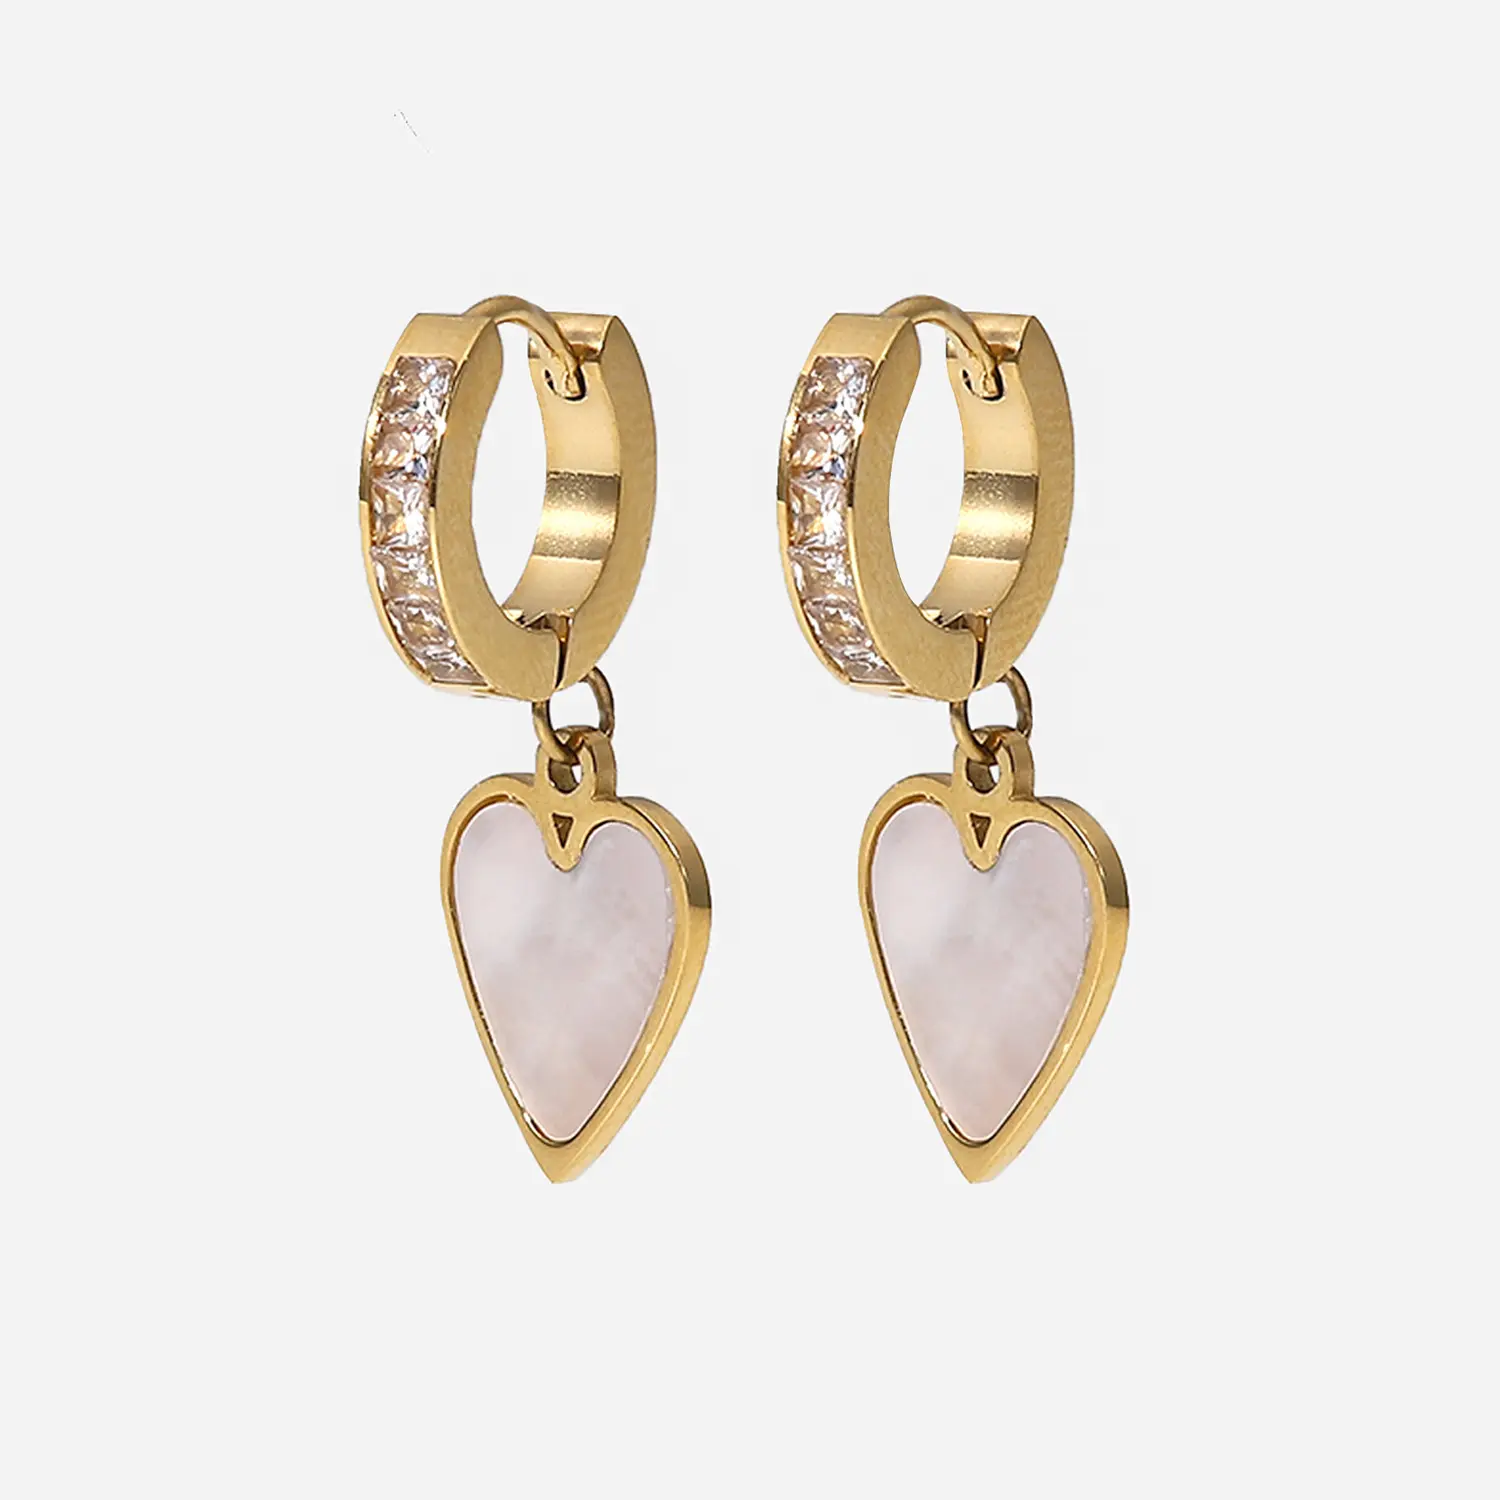 Heart Shaped Earrings Mother of Pearl Shell Heart Drop Earrings Cubic Zirconia Drop Earrings Stainless Steel Waterproof Jewelry